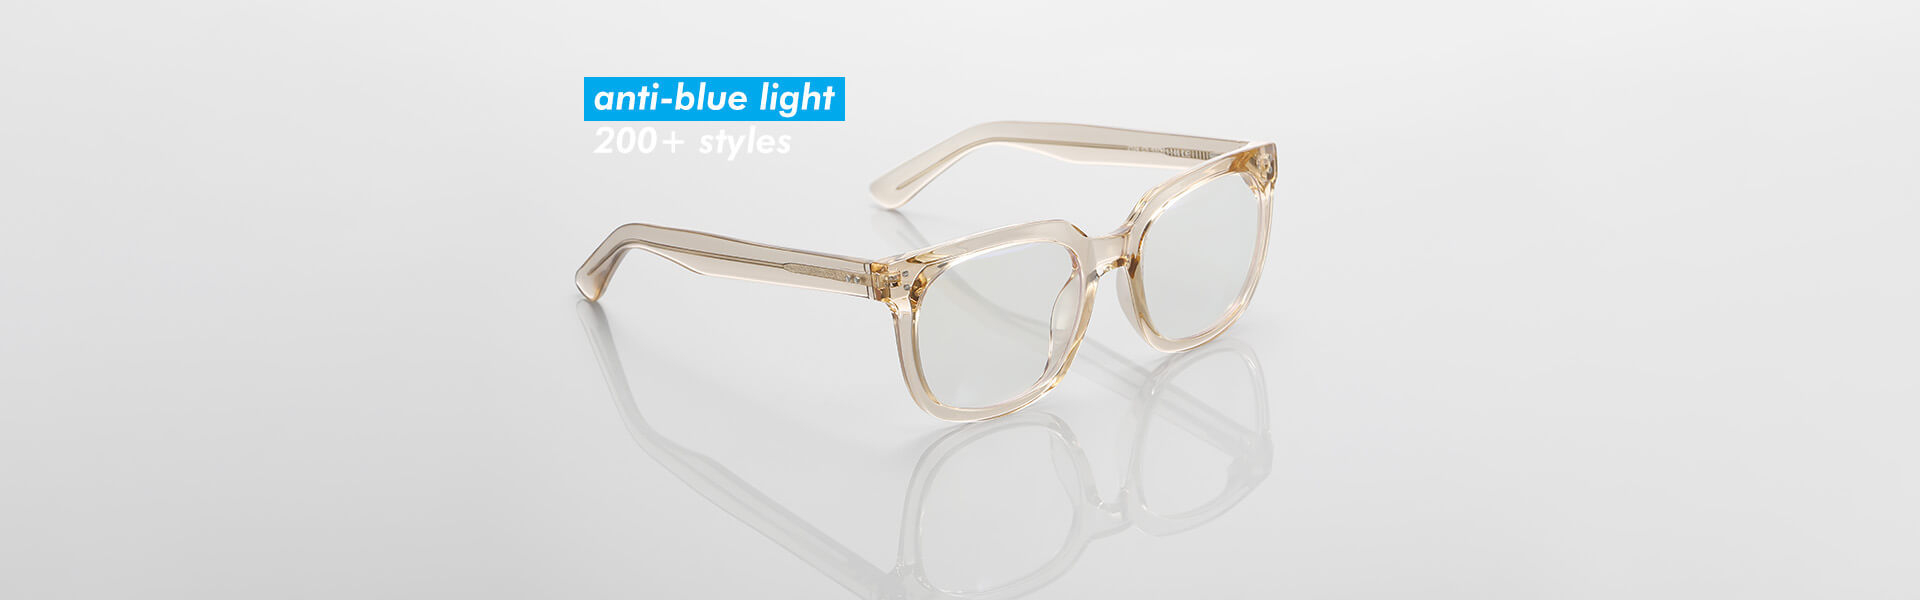 anti-blue light glasses